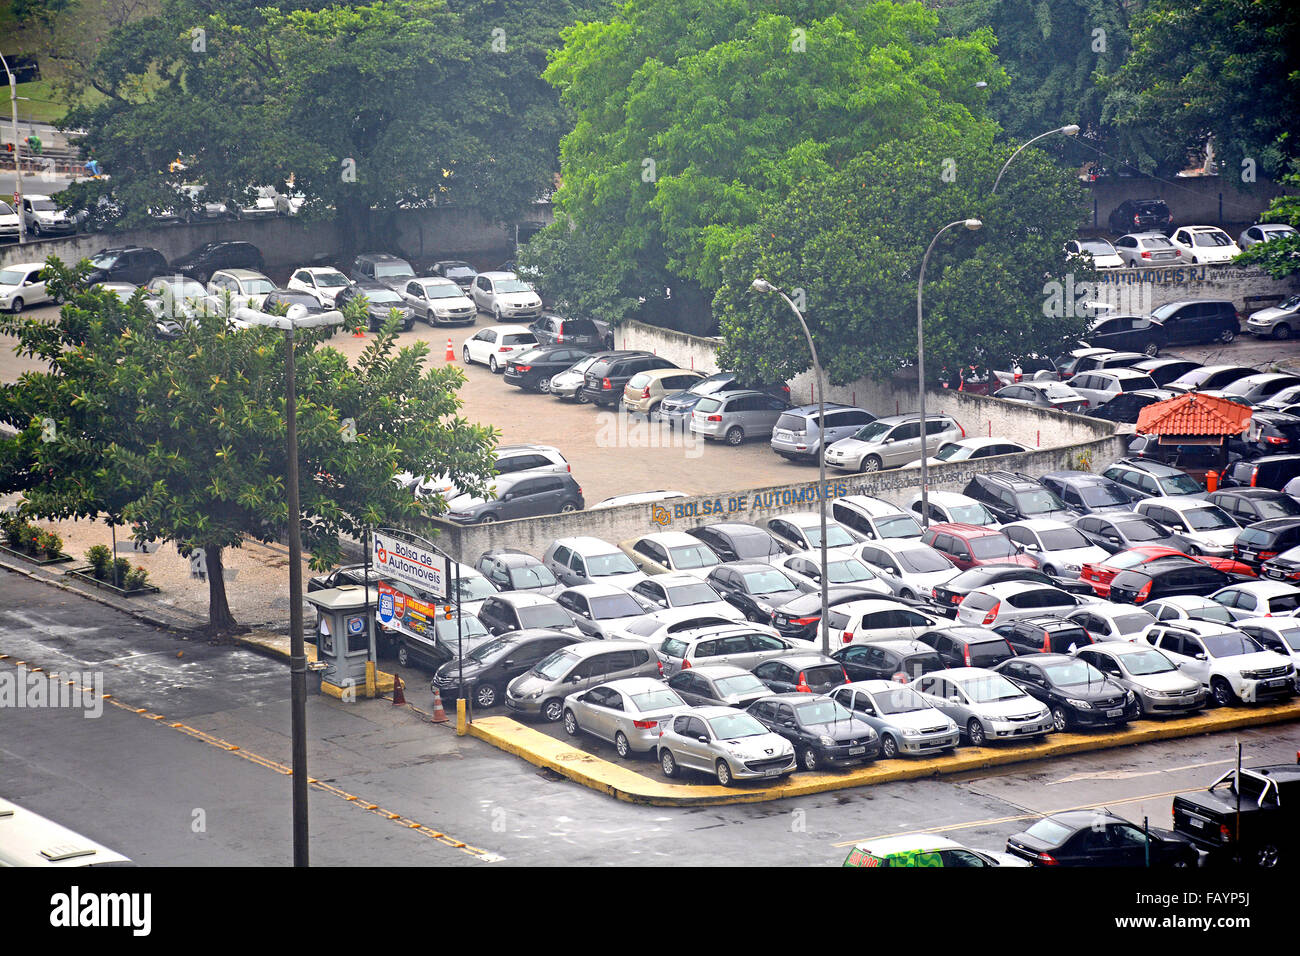 Bolsa de automoveis avenue Mal. Camara Centro Rio de Janeiro Brazil Stock  Photo - Alamy